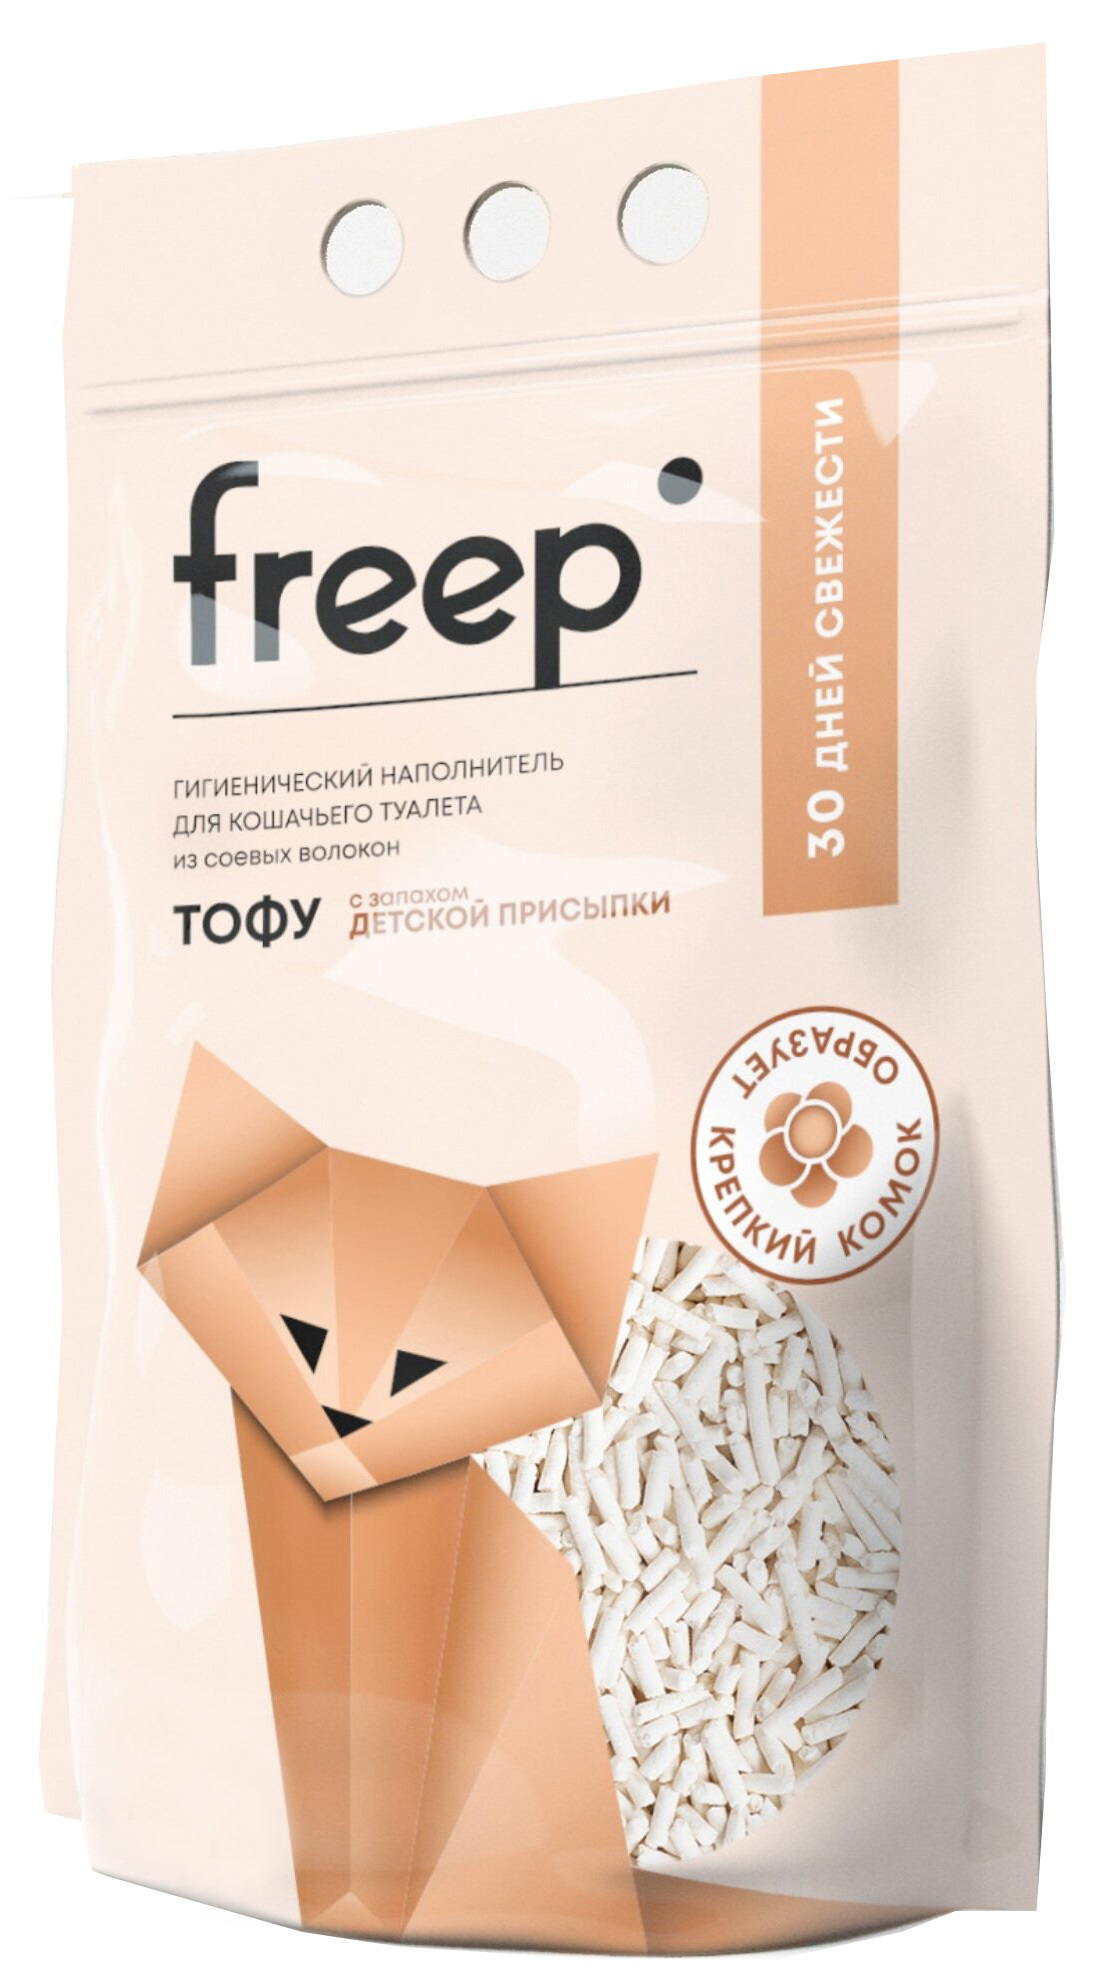 Наполнитель для кошачьего туалета Freep тофу 4.5 л детская присыпка